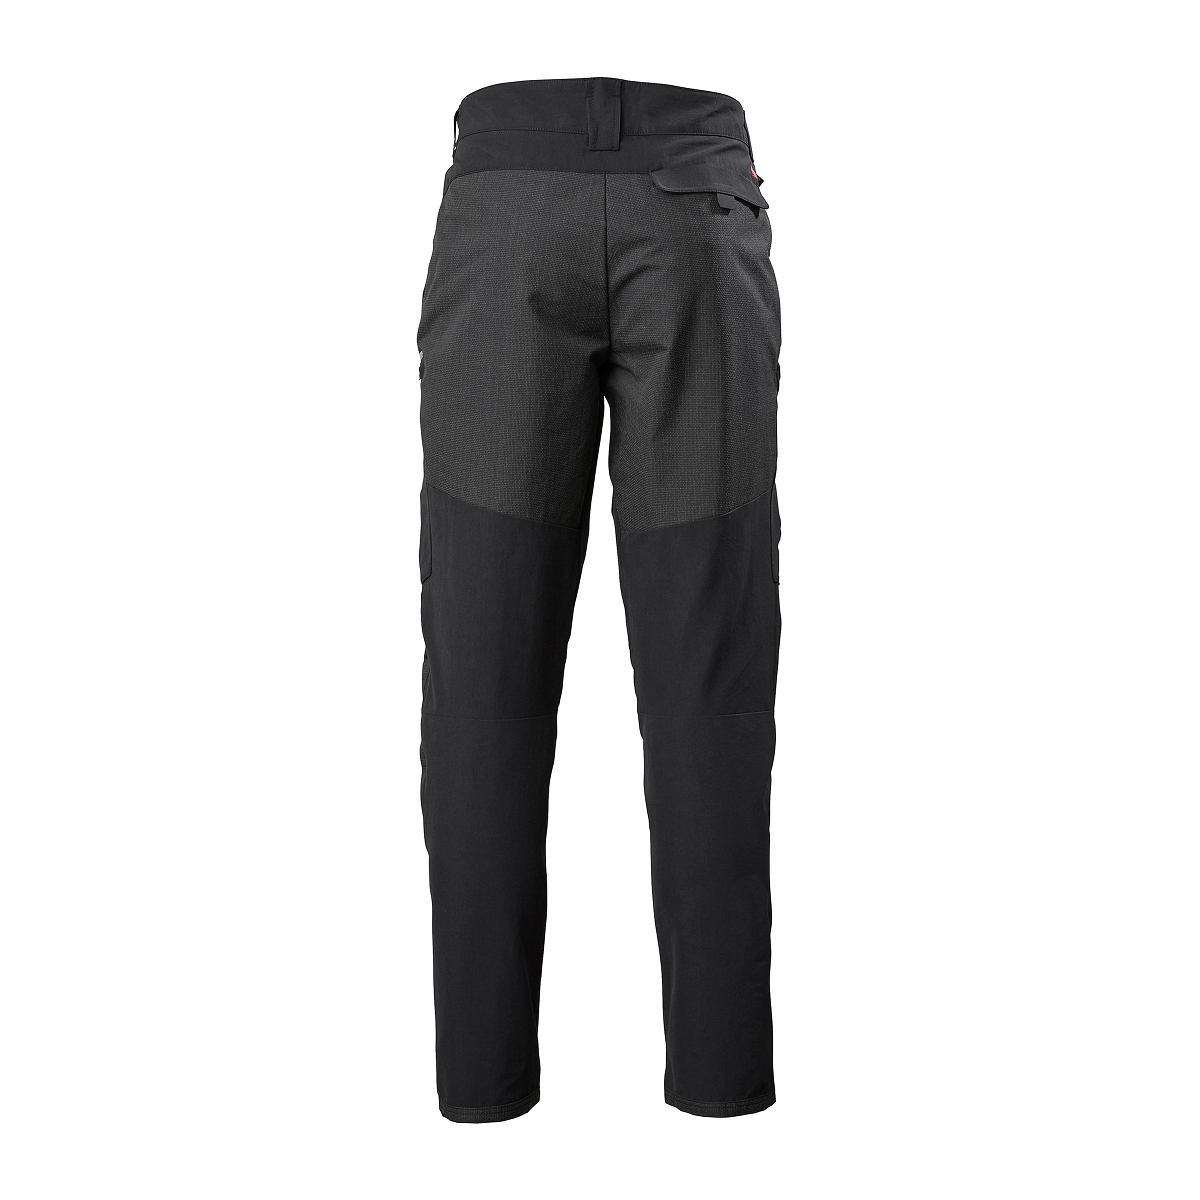 Musto Evolution Performance pantalon de voile 2.0 homme noir, taille 38